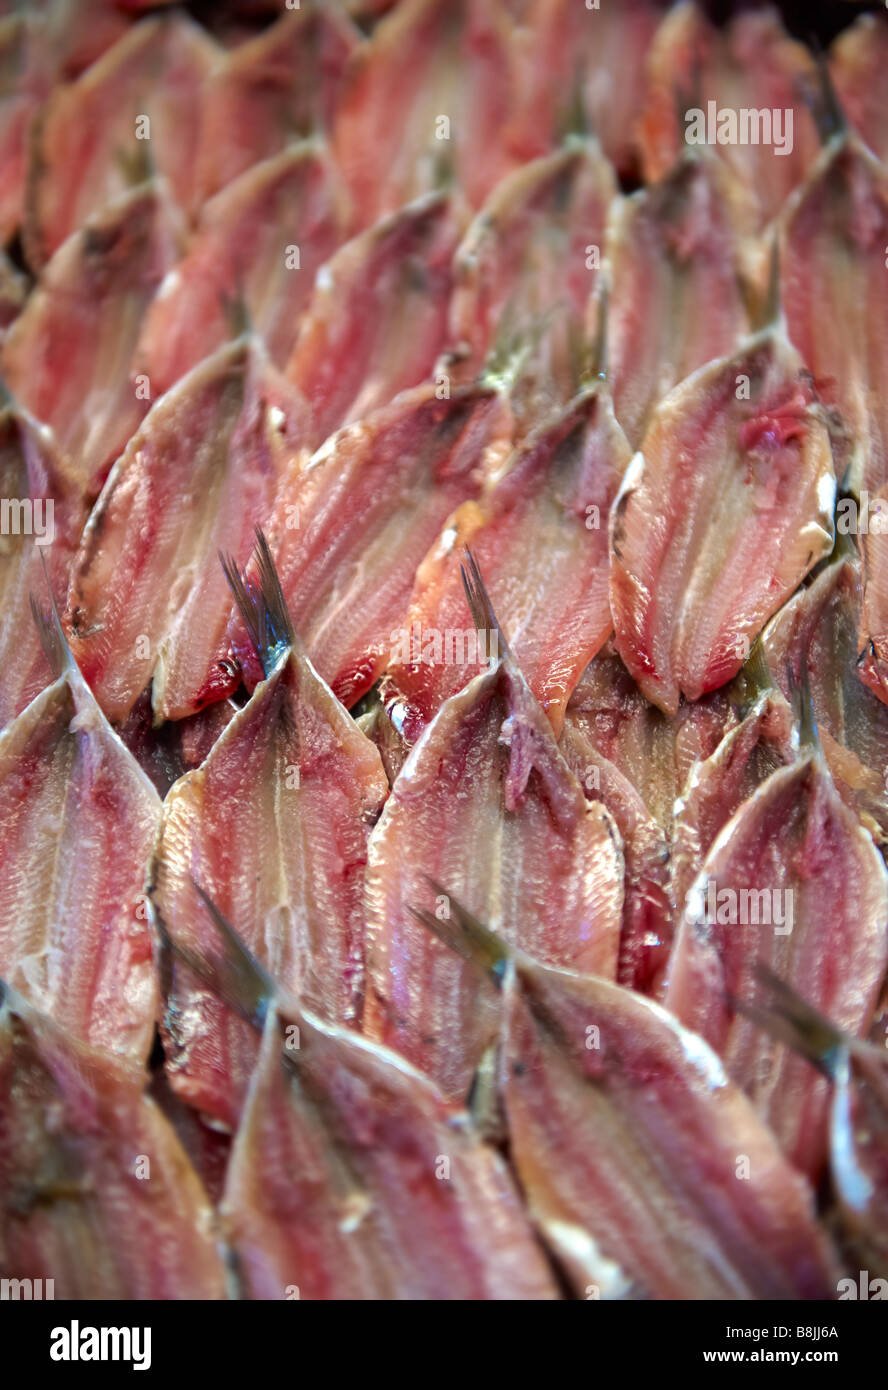 Las anchoas frescas del mercado de pescado de Rialto de Venecia Foto de stock